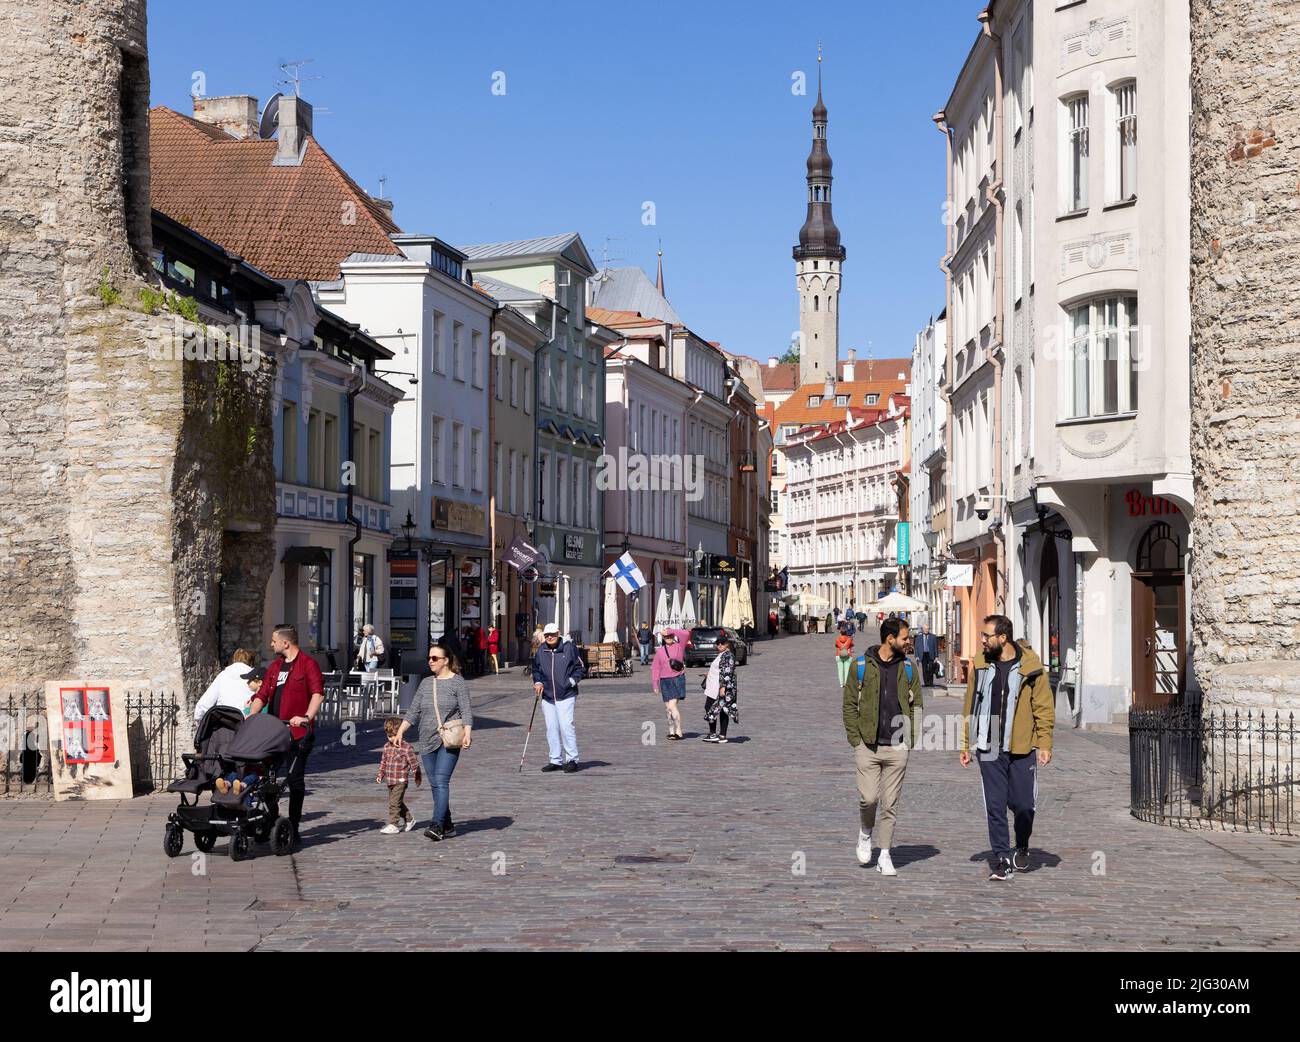 Tallinn Old Town strada lastricata scena in estate, con edifici medievali e persone; Tallinn Estonia Europa. Viaggio in Estonia. Foto Stock